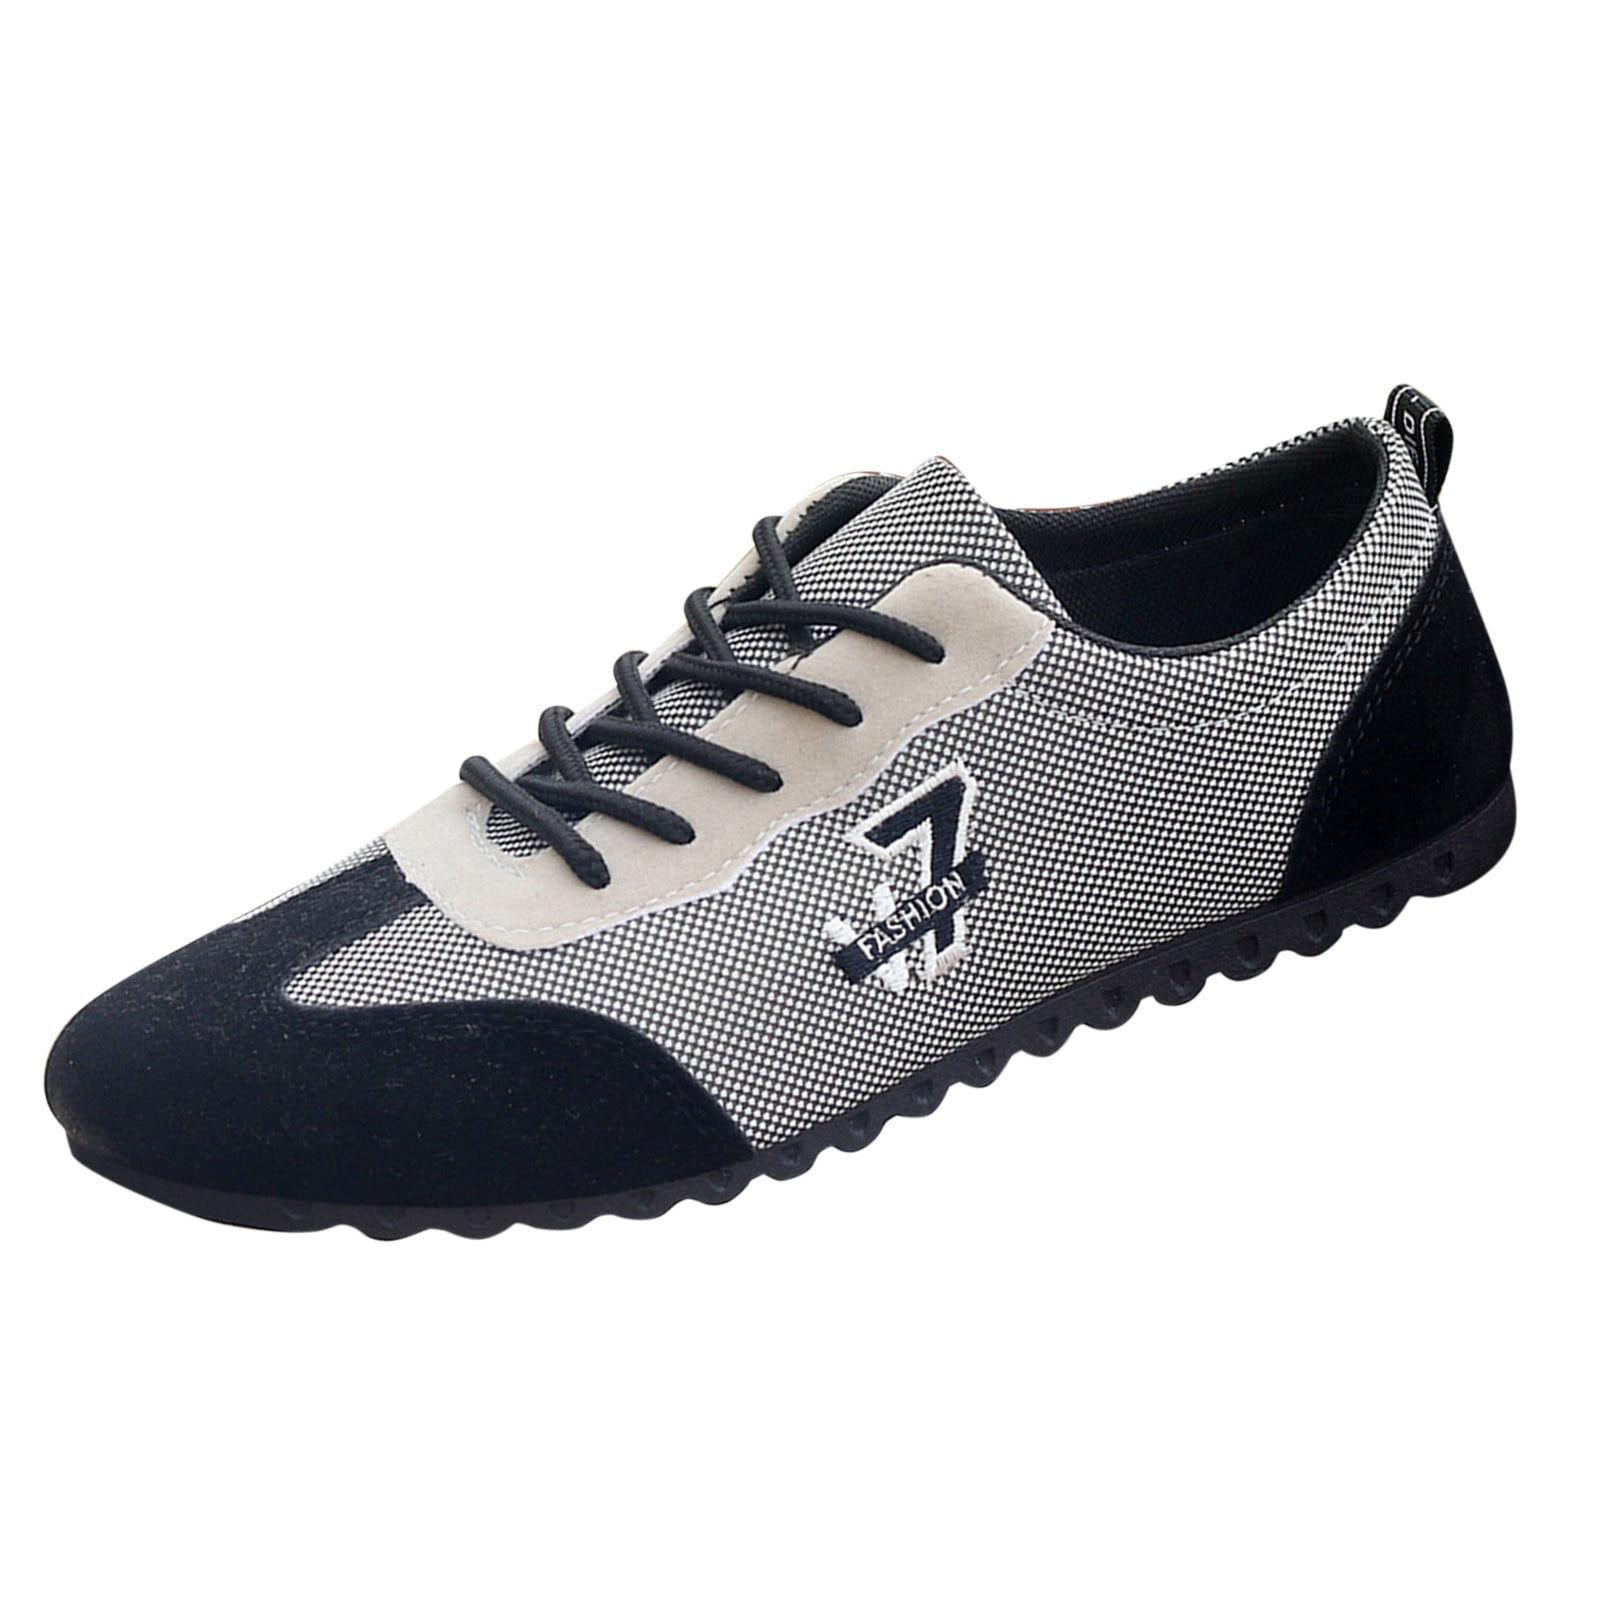 Pimfylm Pointed Toe Flats For Men Men's Slip On Sneakers, Lightweight  Barefoot Feel Blue 8 